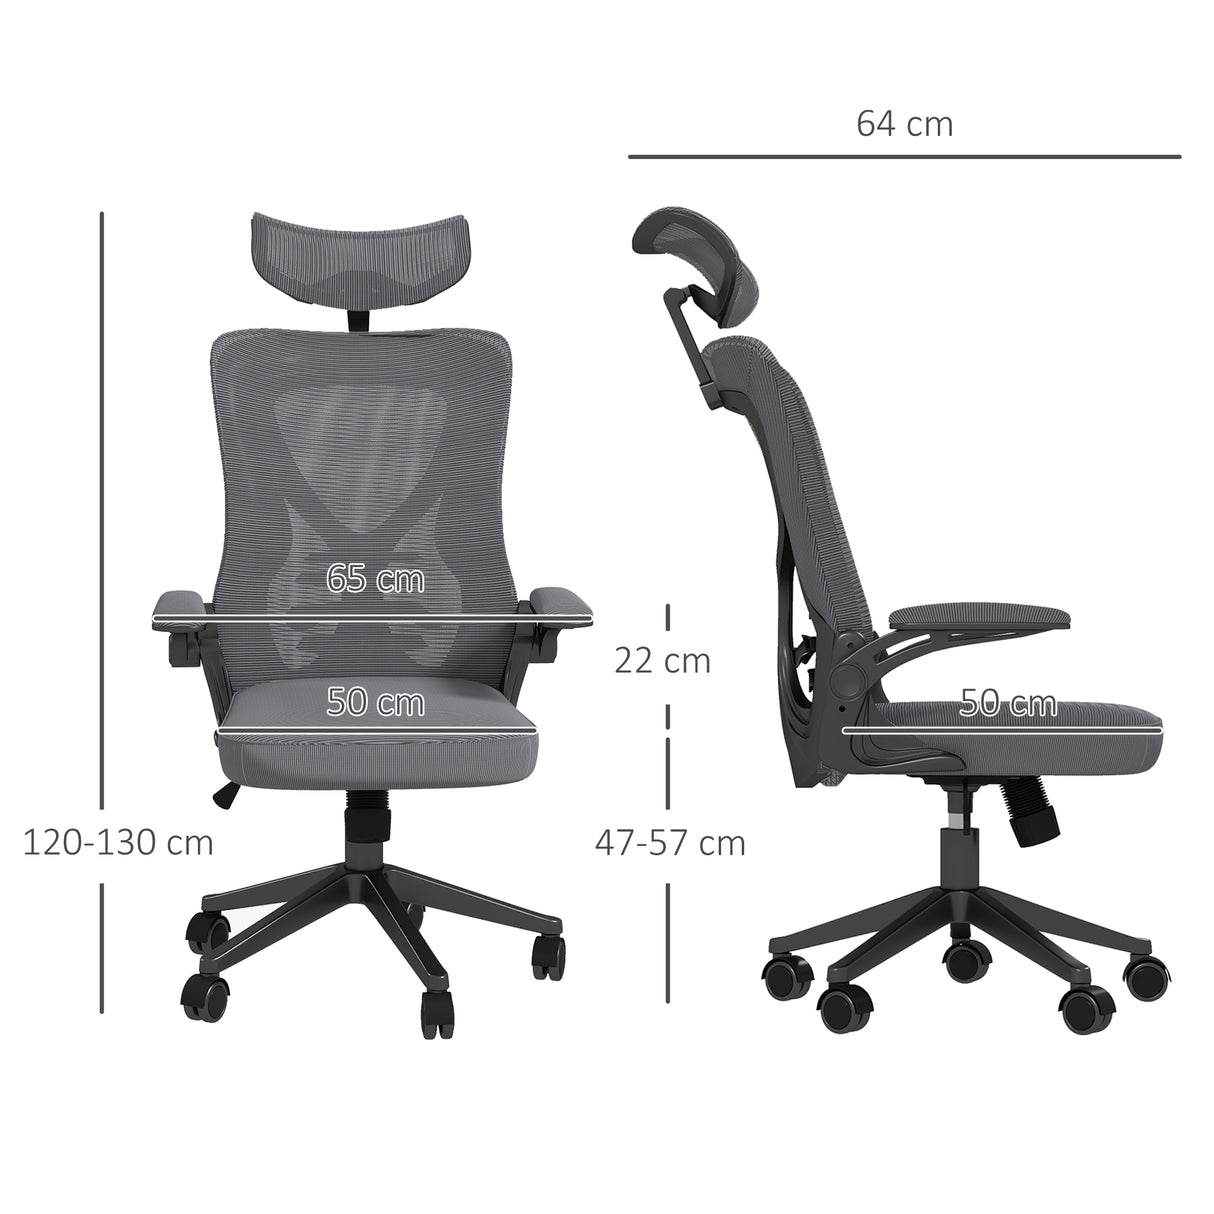 immagine-3-easycomfort-easycomfort-sedia-da-ufficio-ad-altezza-regolabile-con-poggiatesta-supporto-lombare-e-braccioli-65x64x120-130-cm